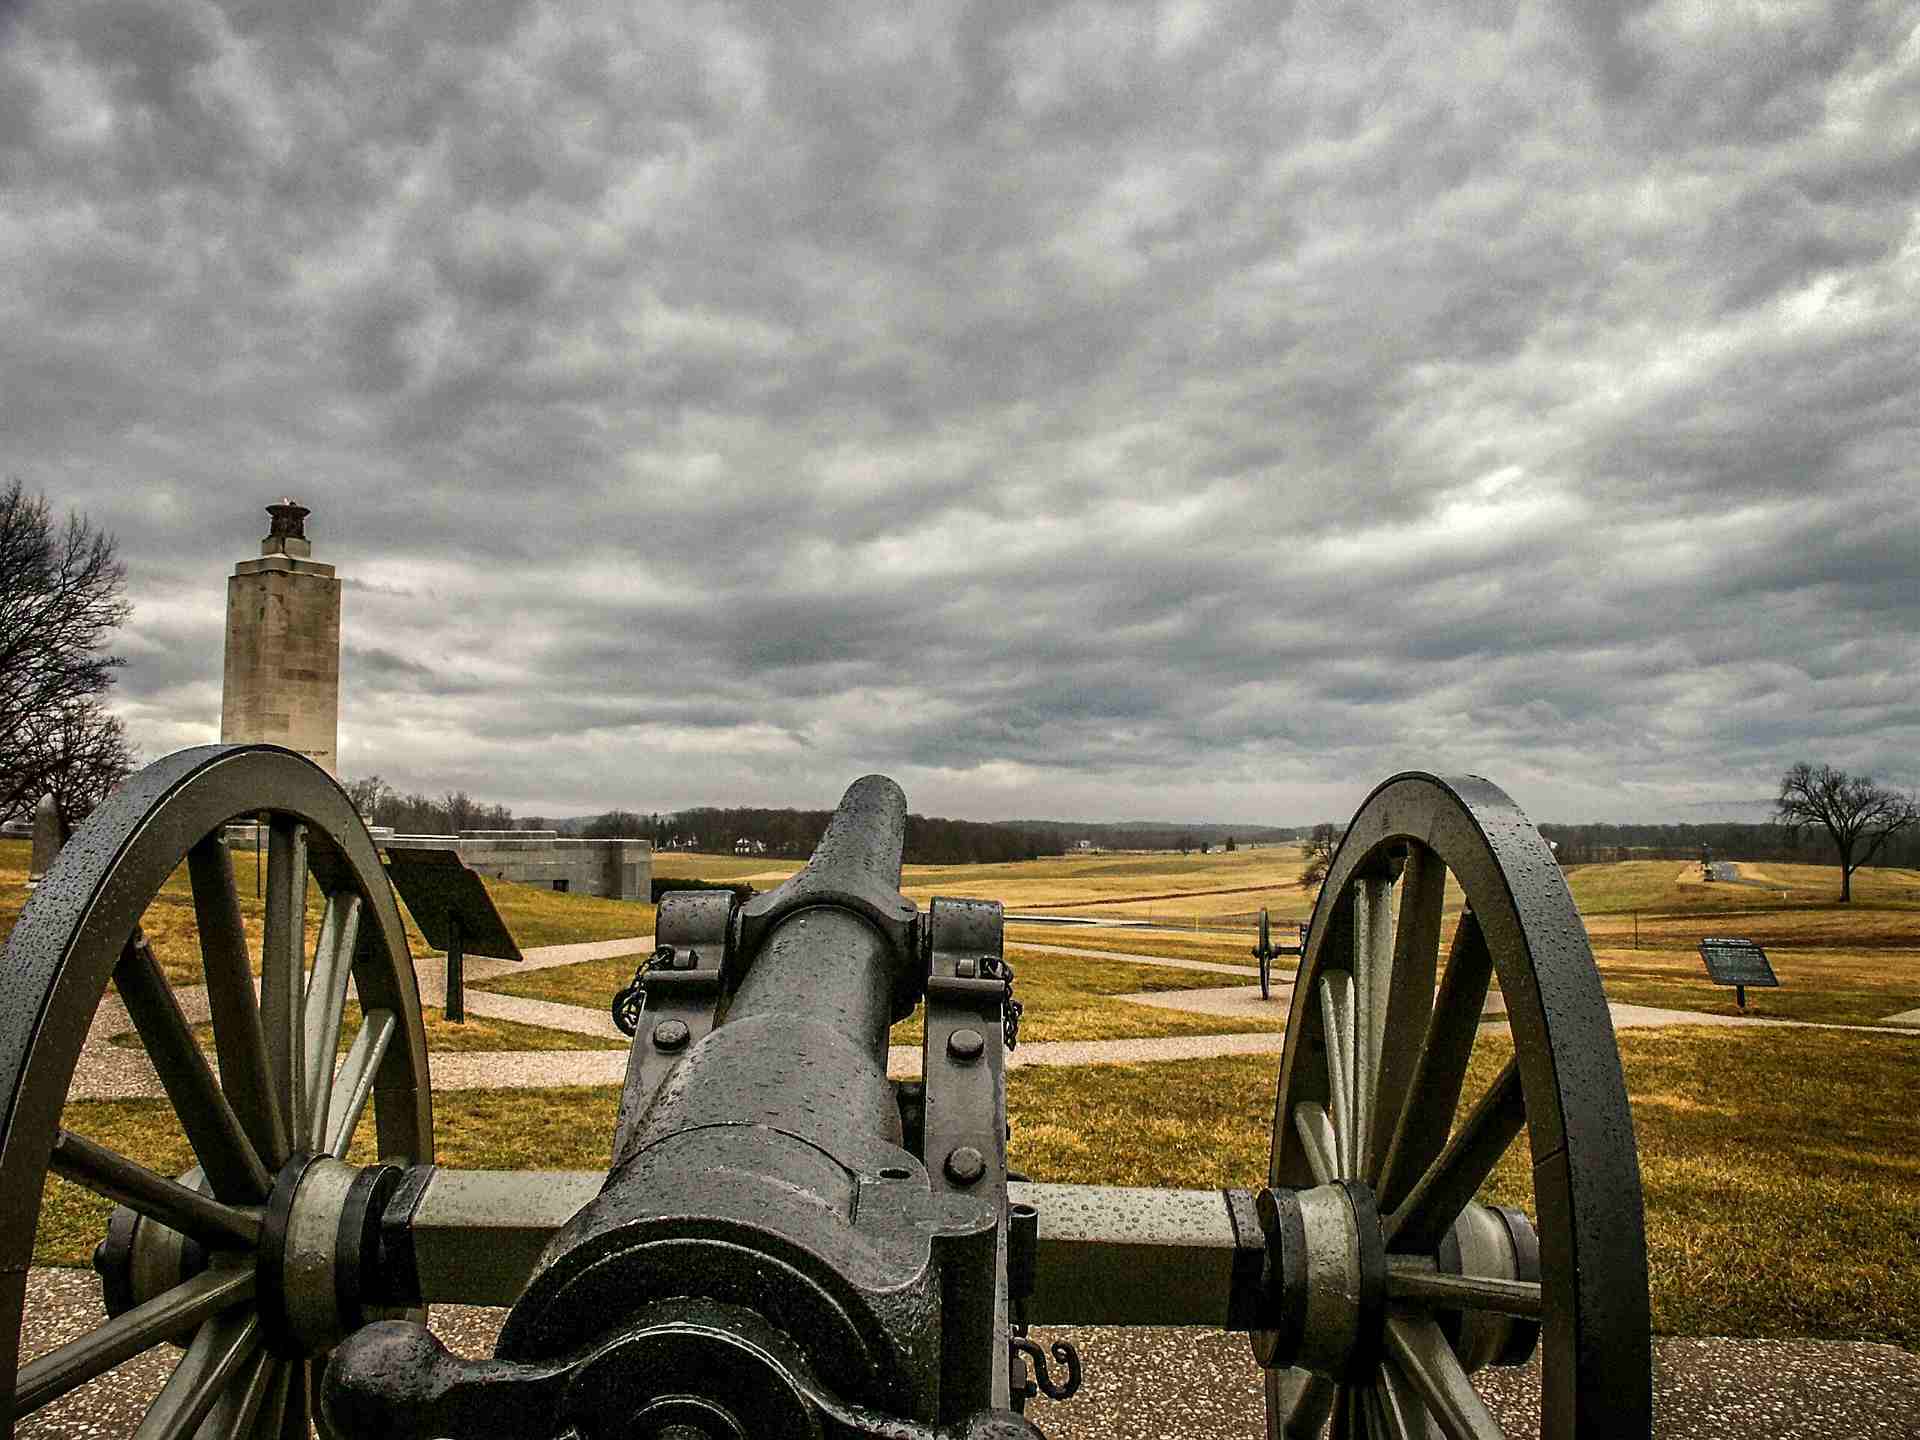 Campo de batalla nacional de Gettysburg, Pensilvania